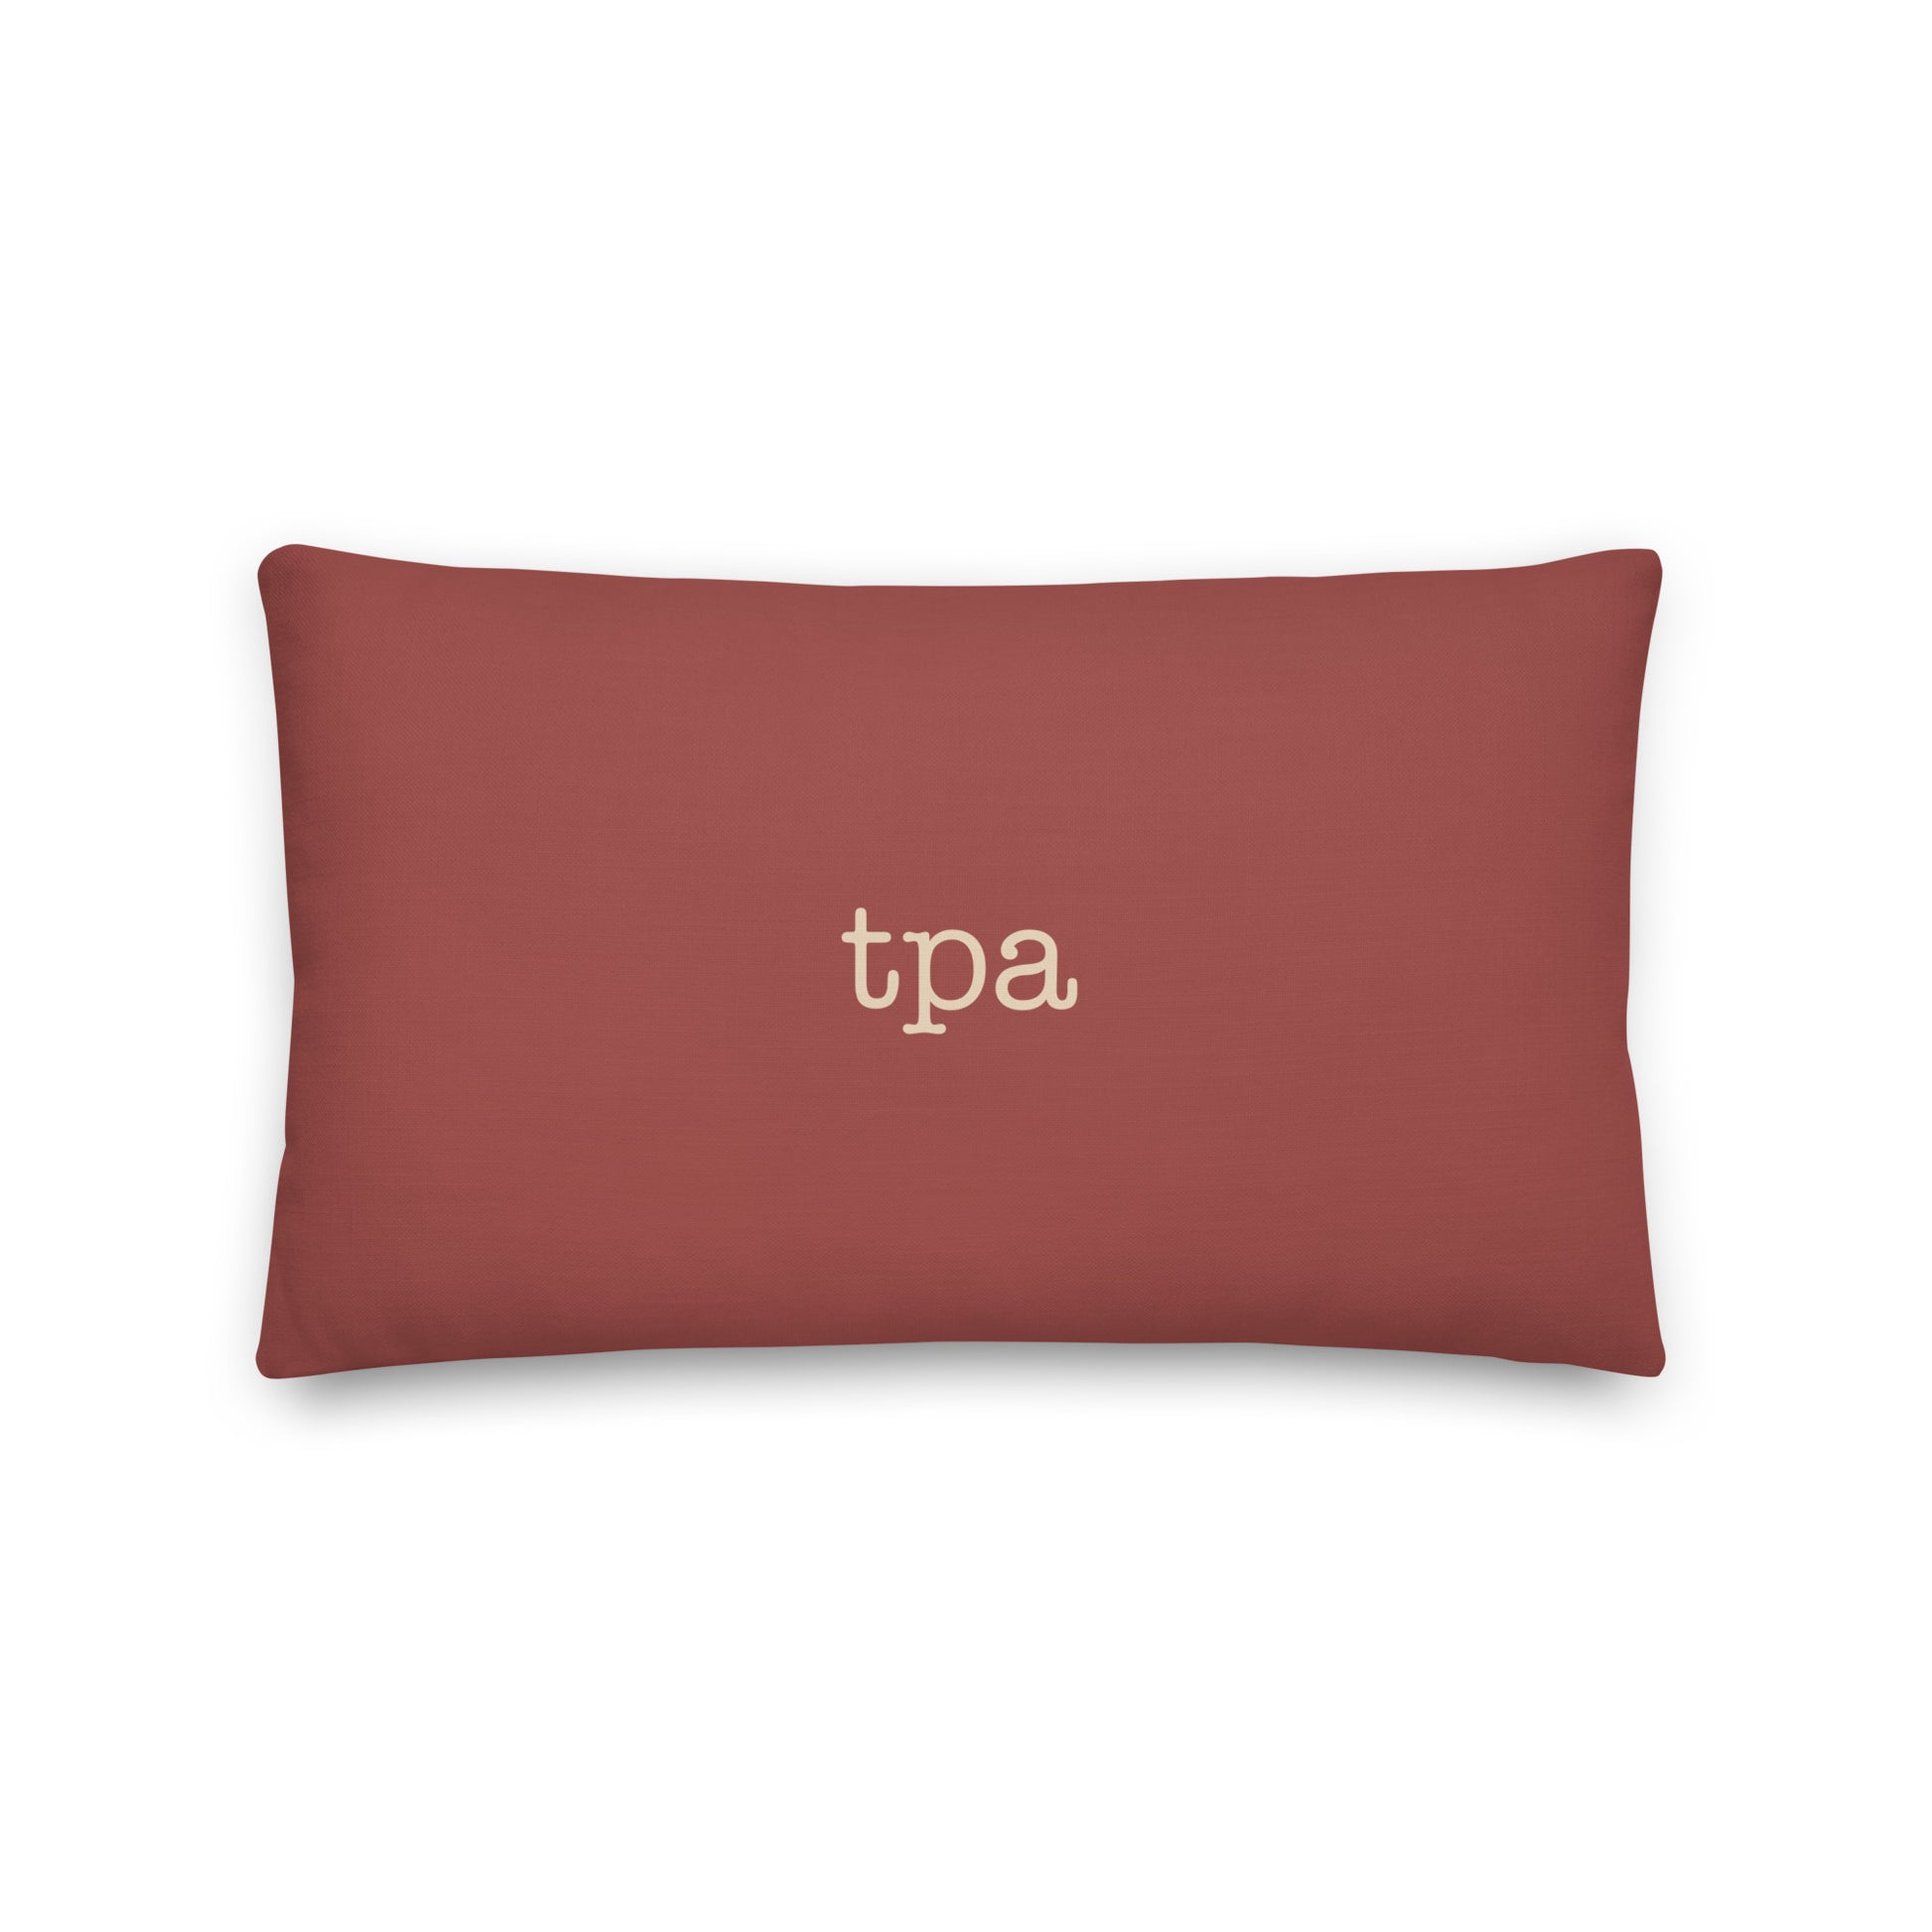 Typewriter Pillow - Terra Cotta • TPA Tampa • YHM Designs - Image 02